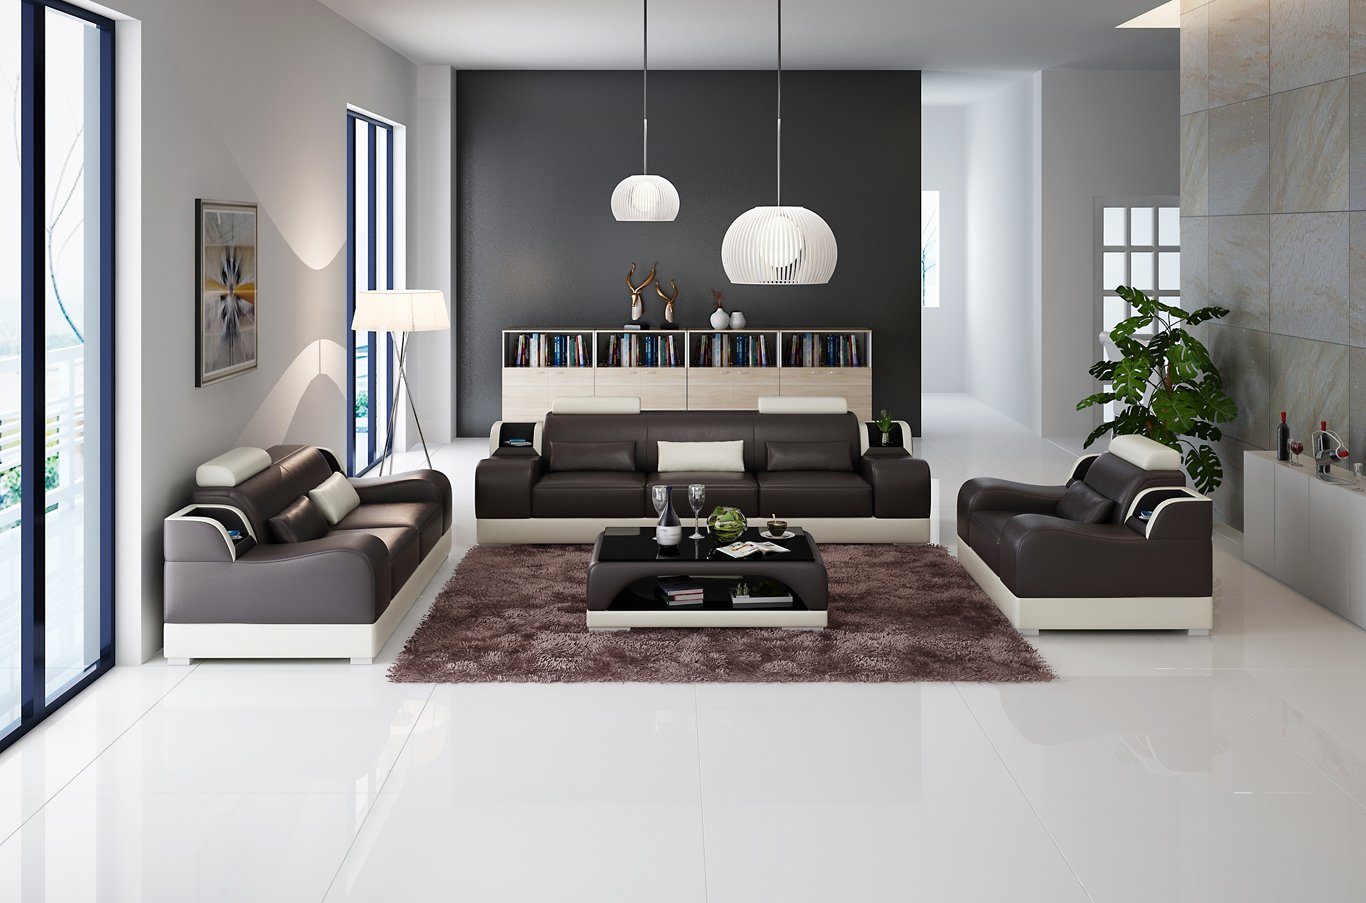 JVmoebel Sofa 3+2+2 Sitzer Set Design Sofa Polster Couchen Couch Modern Luxus Neu, Made in Europe Braun/Beige